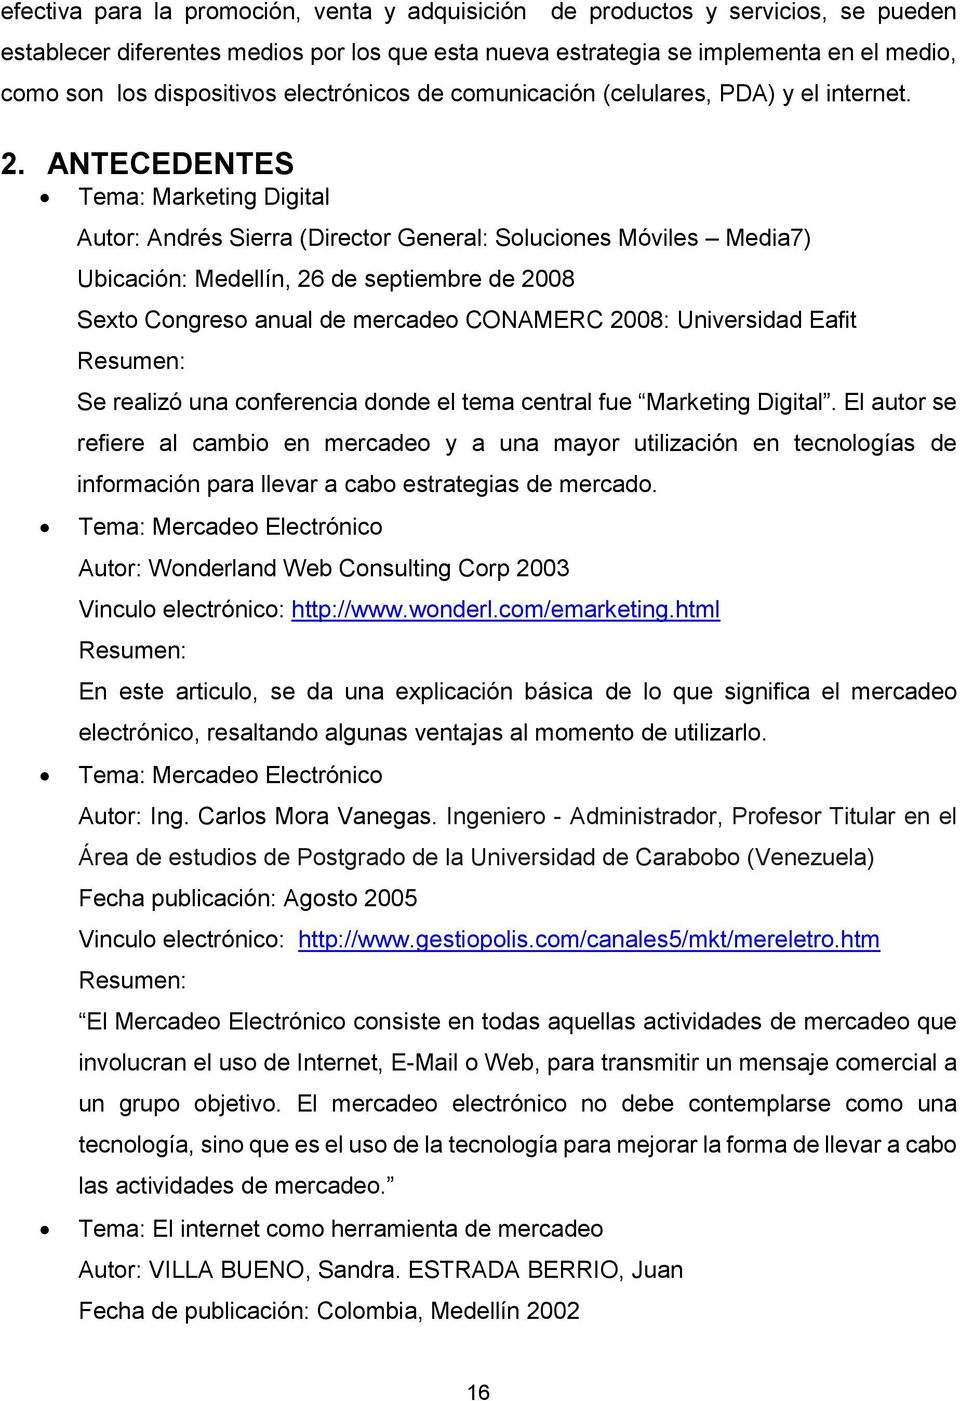 ANTECEDENTES Tema: Marketing Digital Autor: Andrés Sierra (Director General: Soluciones Móviles Media7) Ubicación: Medellín, 26 de septiembre de 2008 Sexto Congreso anual de mercadeo CONAMERC 2008: